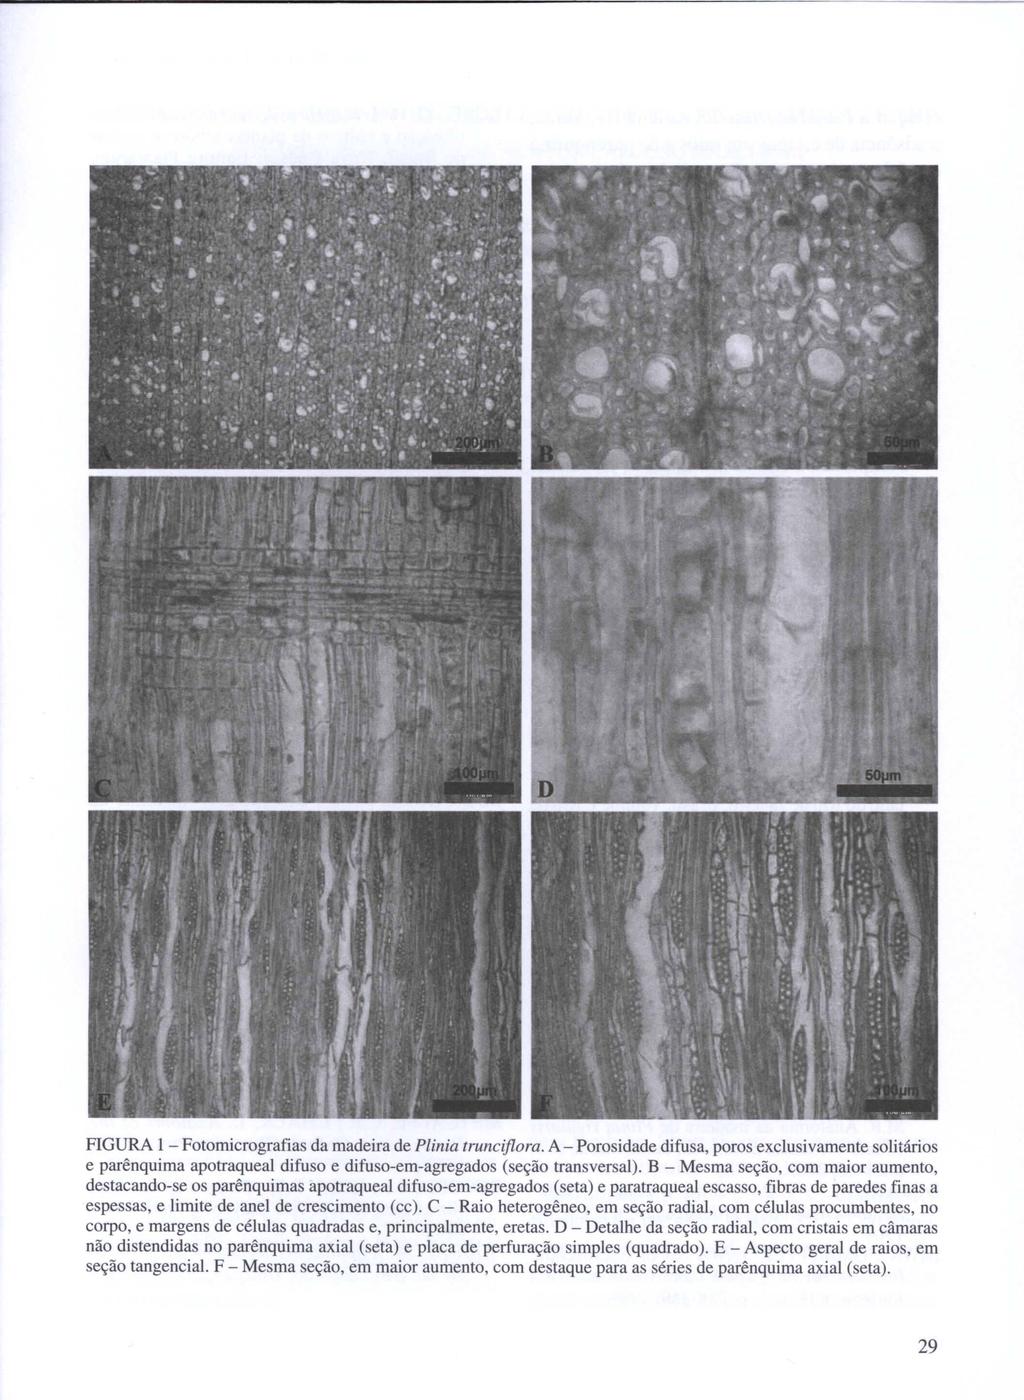 FIGURA I - Fotomicrografias da madeira de Plinia truncijlora. A - Porosidade difusa, poros exclusi vamente solitários e parênquima apotraqueal difuso e difuso-em-agregados (seção transversal).